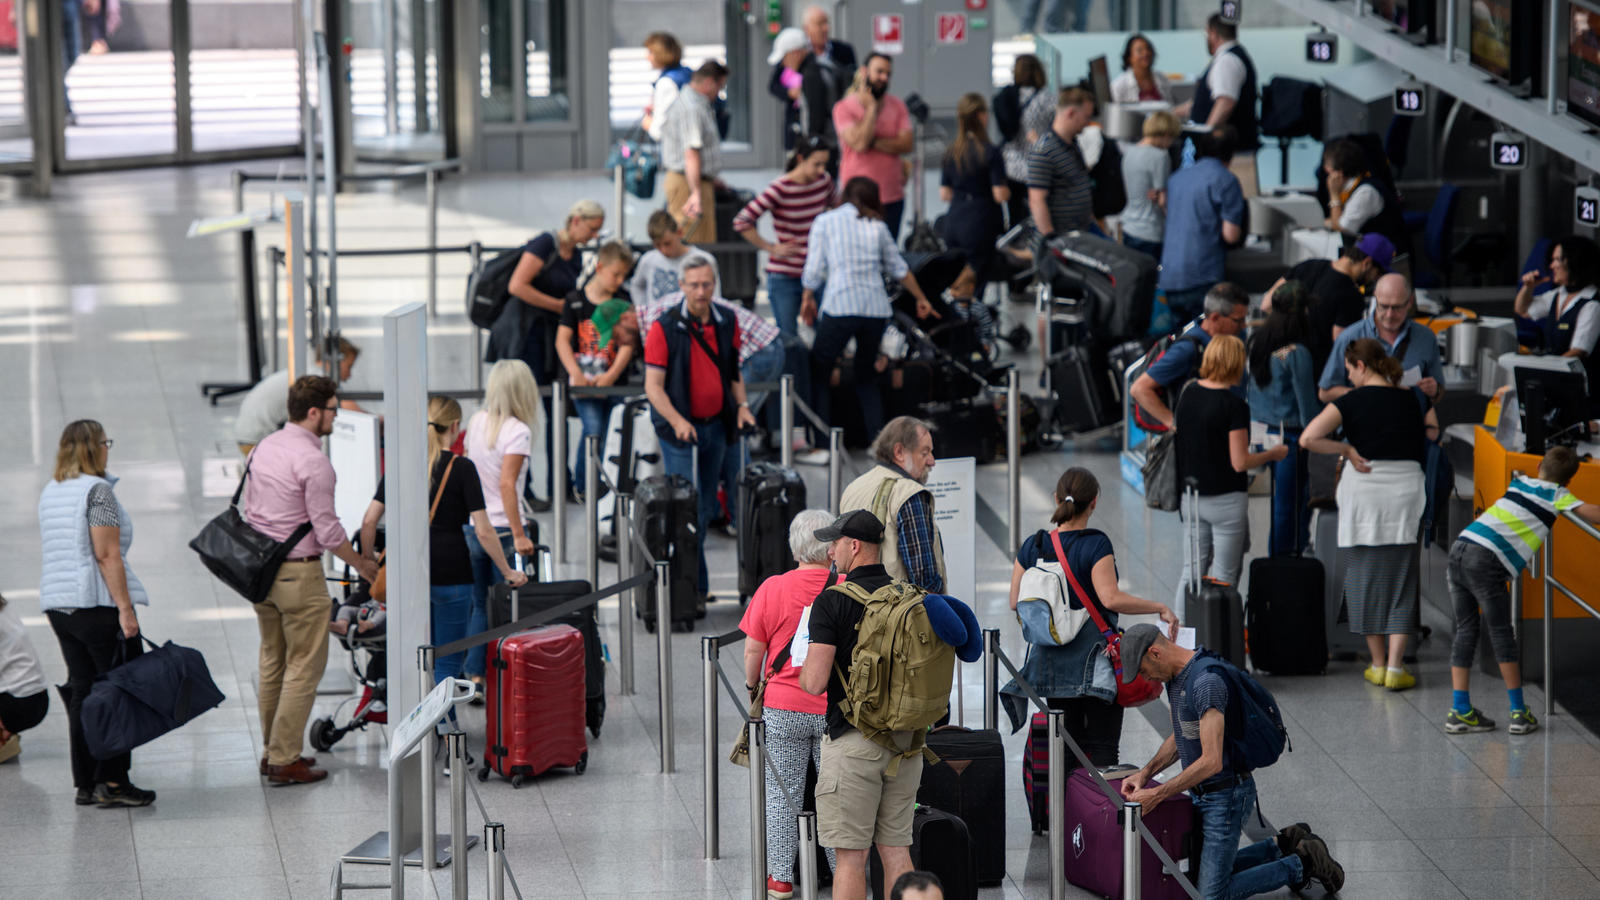 Reisende stehen an Check-In-Schaltern am Flughafen in München (Bayern). Zum Beginn der Pfingstferien in Bayern 02.06.2017 brechen zahlreiche Menschen in den Urlaub auf. Foto: Matthias Balk/dpa +++(c) dpa - Bildfunk+++